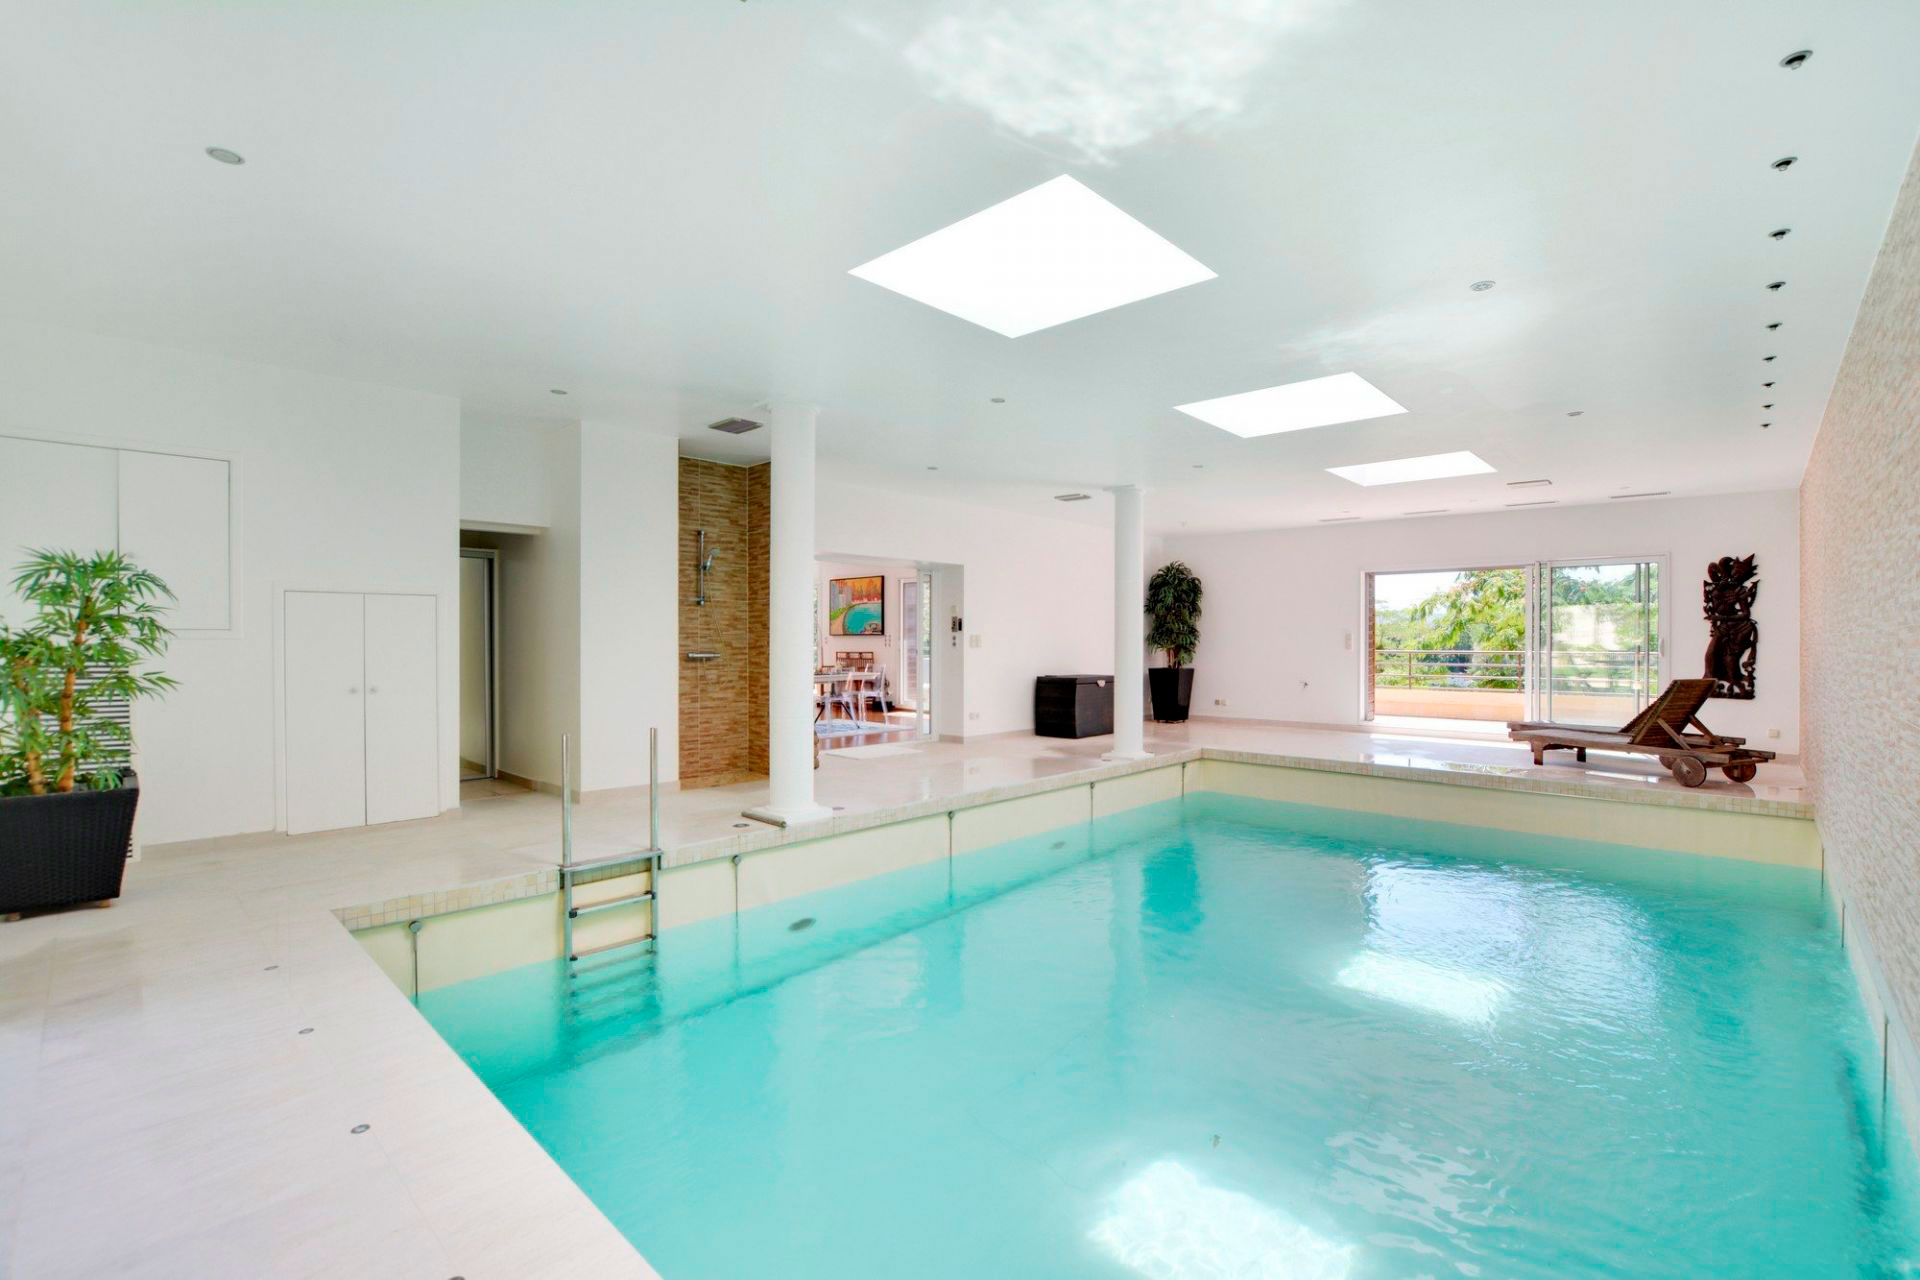 La piscina interna para poder usar en invierno (Sotheby's)